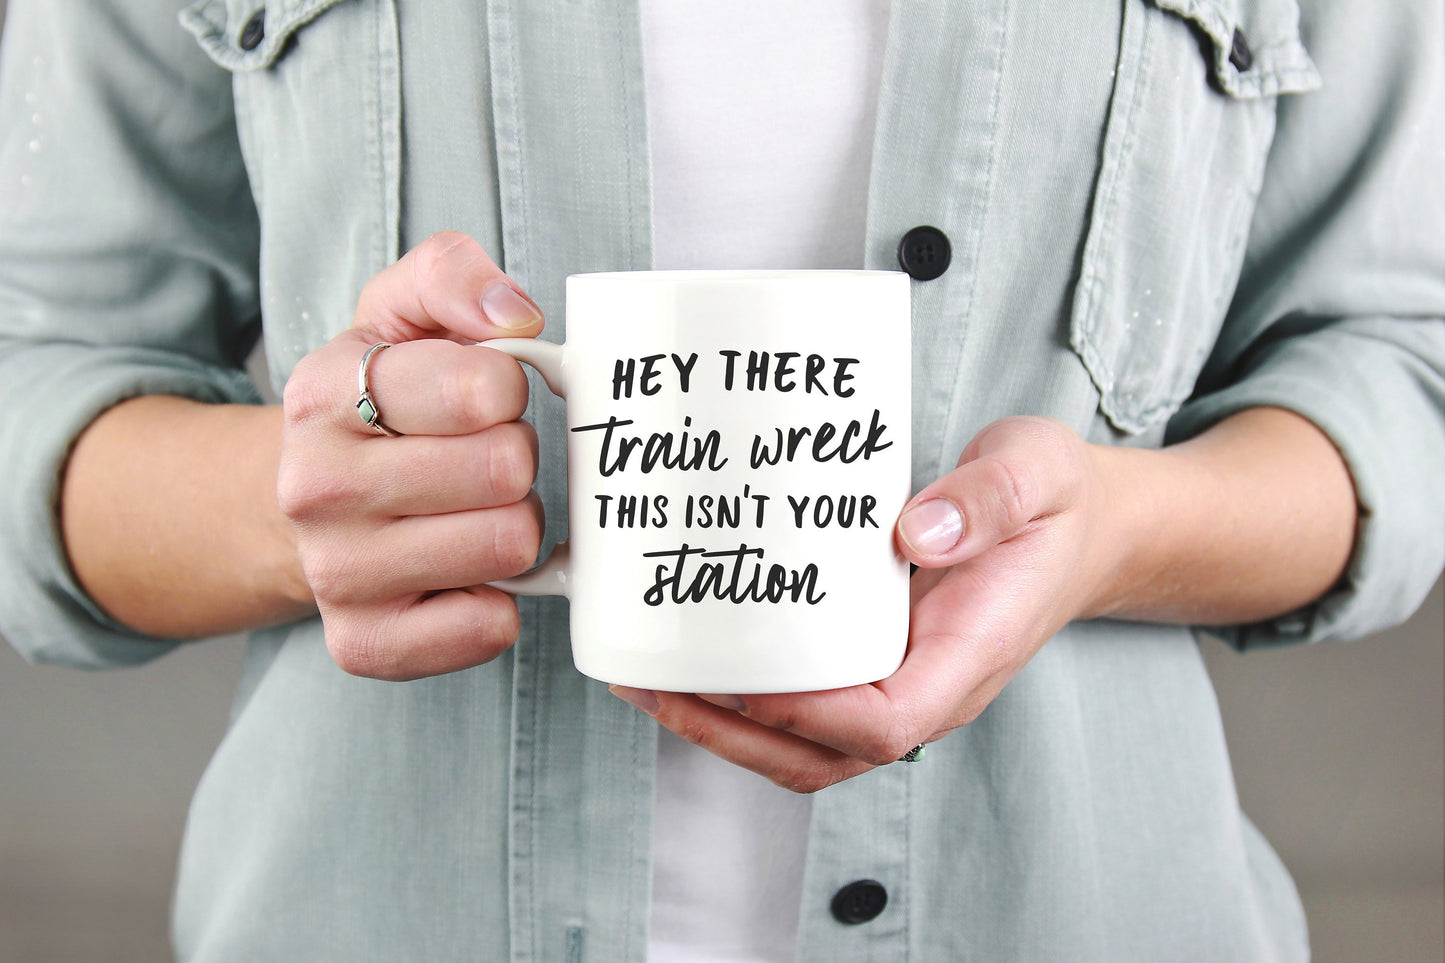 Hey There Train Wreck This Isn’t Your Station Mug - Coffee Mug, Sarcastic Mug, Funny Gift, Sassy Gifts, Sassy Quotes, Funny Mug, Sarcasm